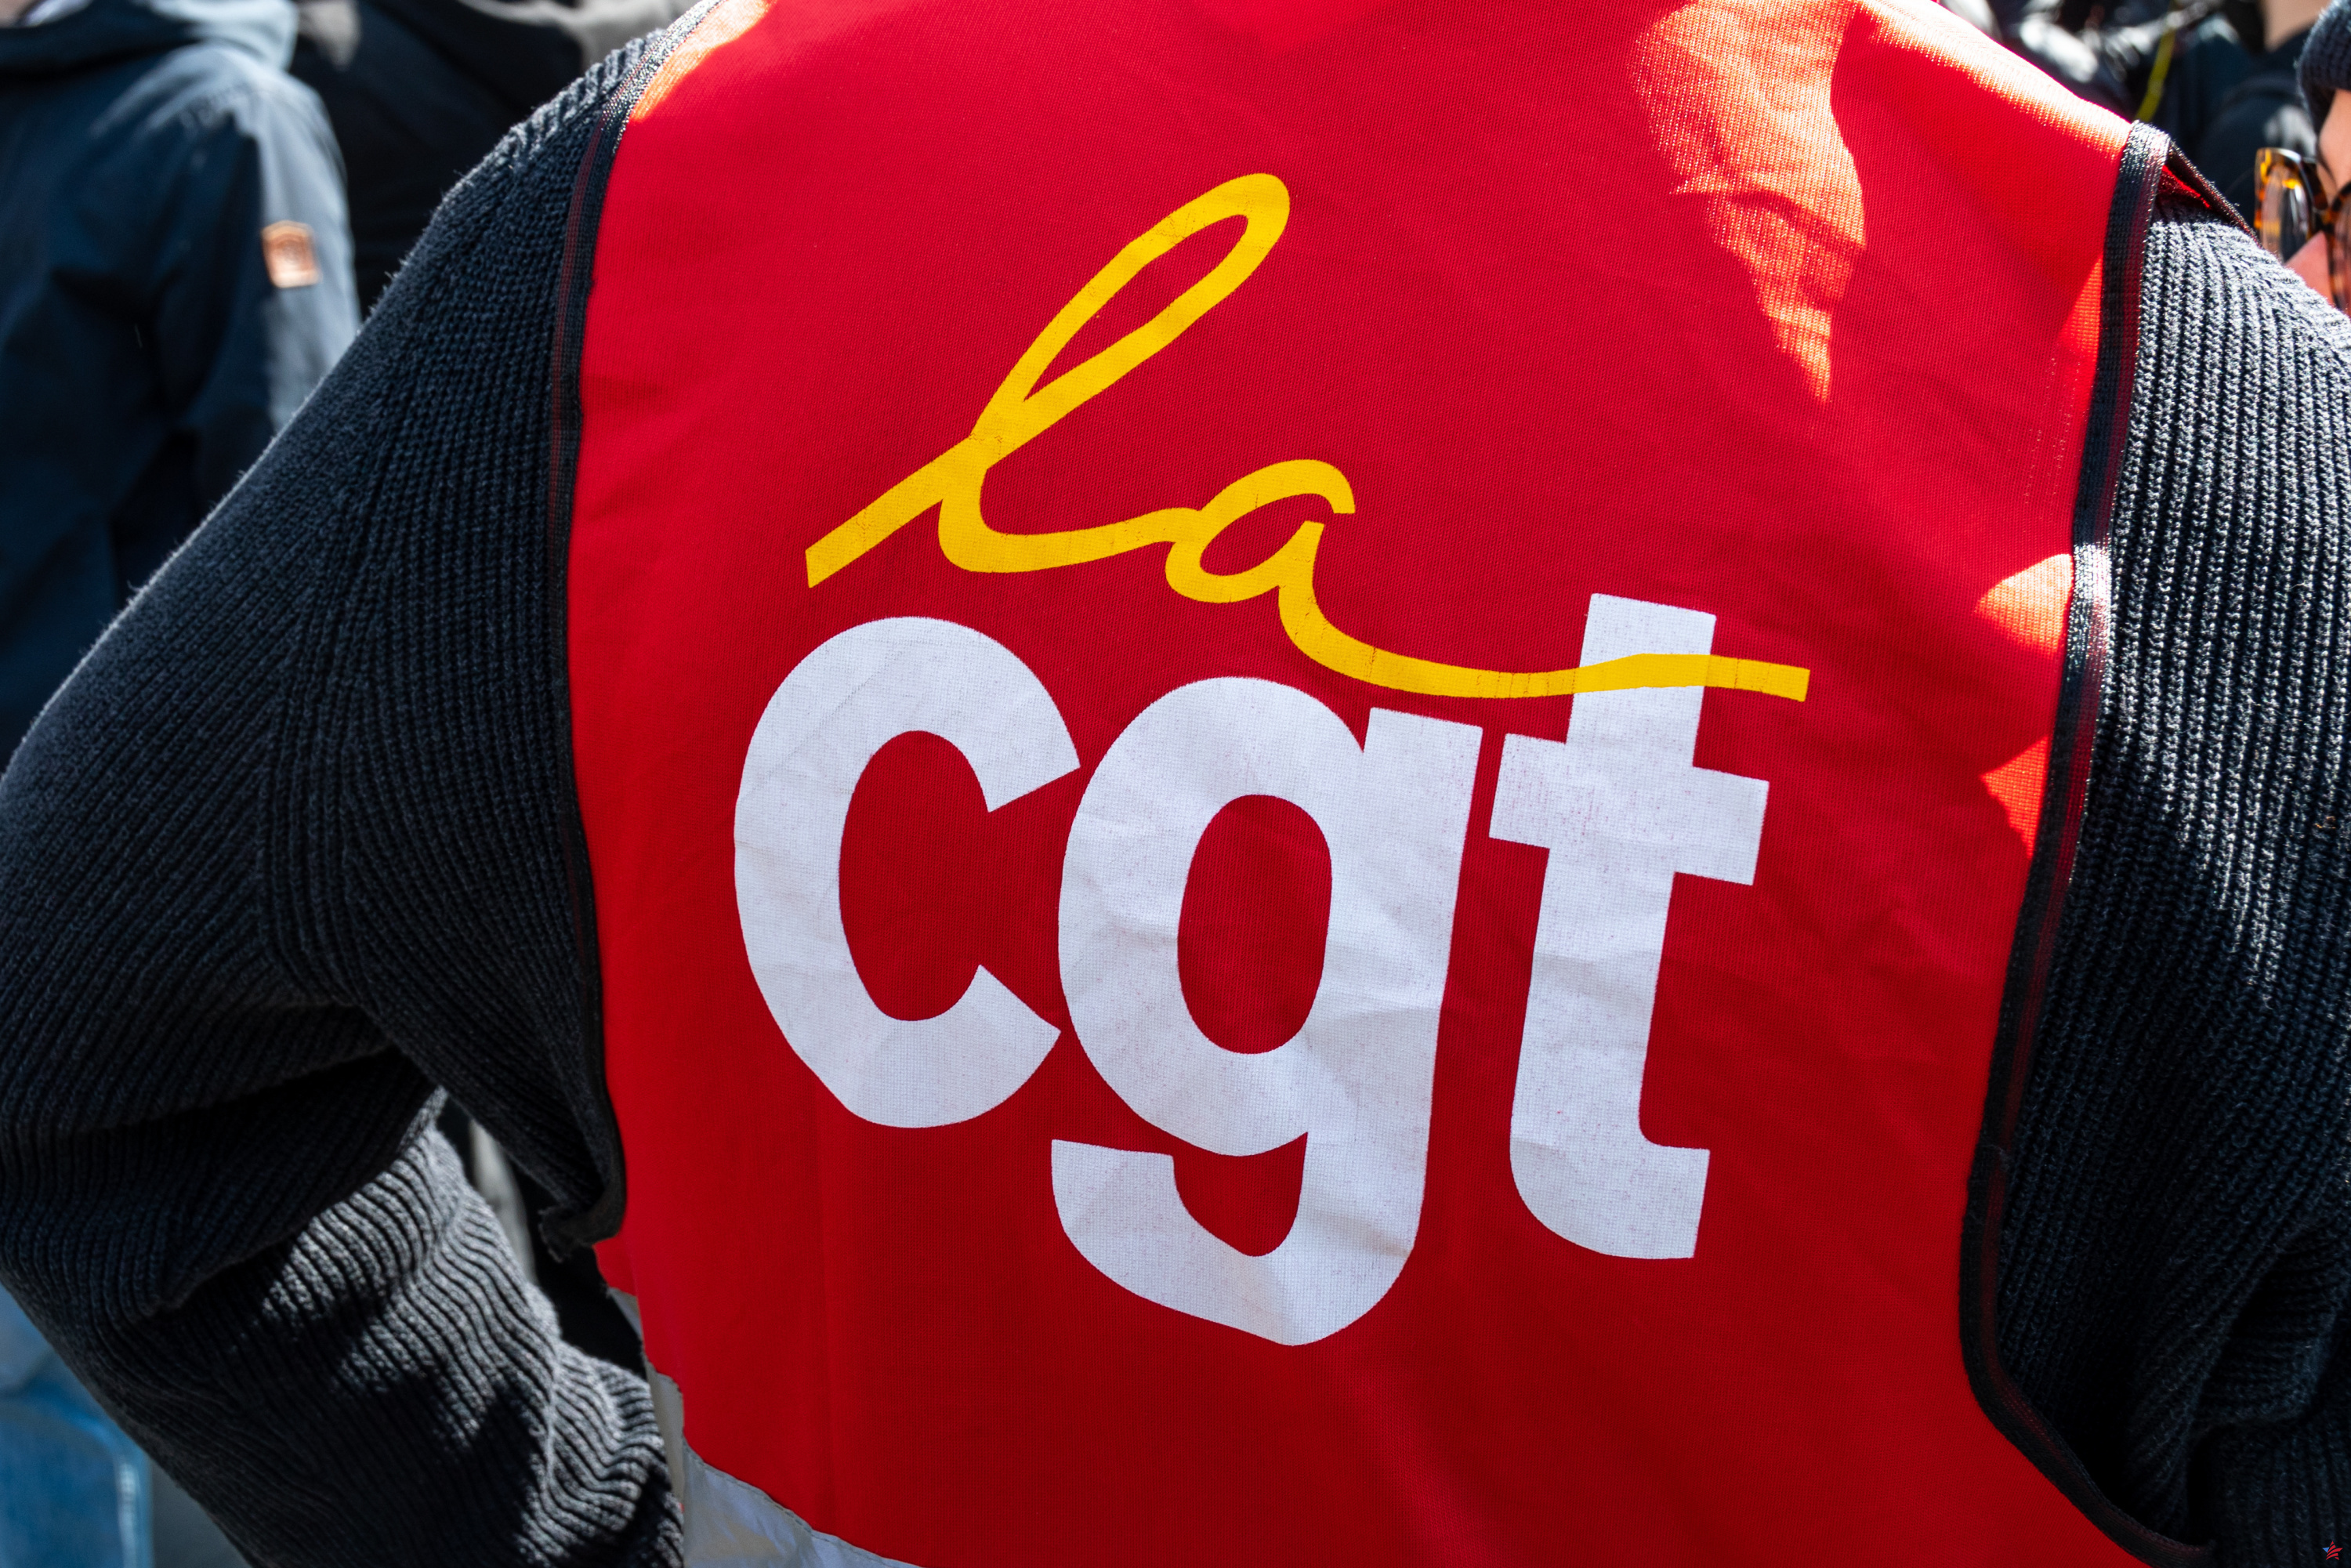 Función pública: la CGT presentó avisos de huelga para los Juegos Olímpicos